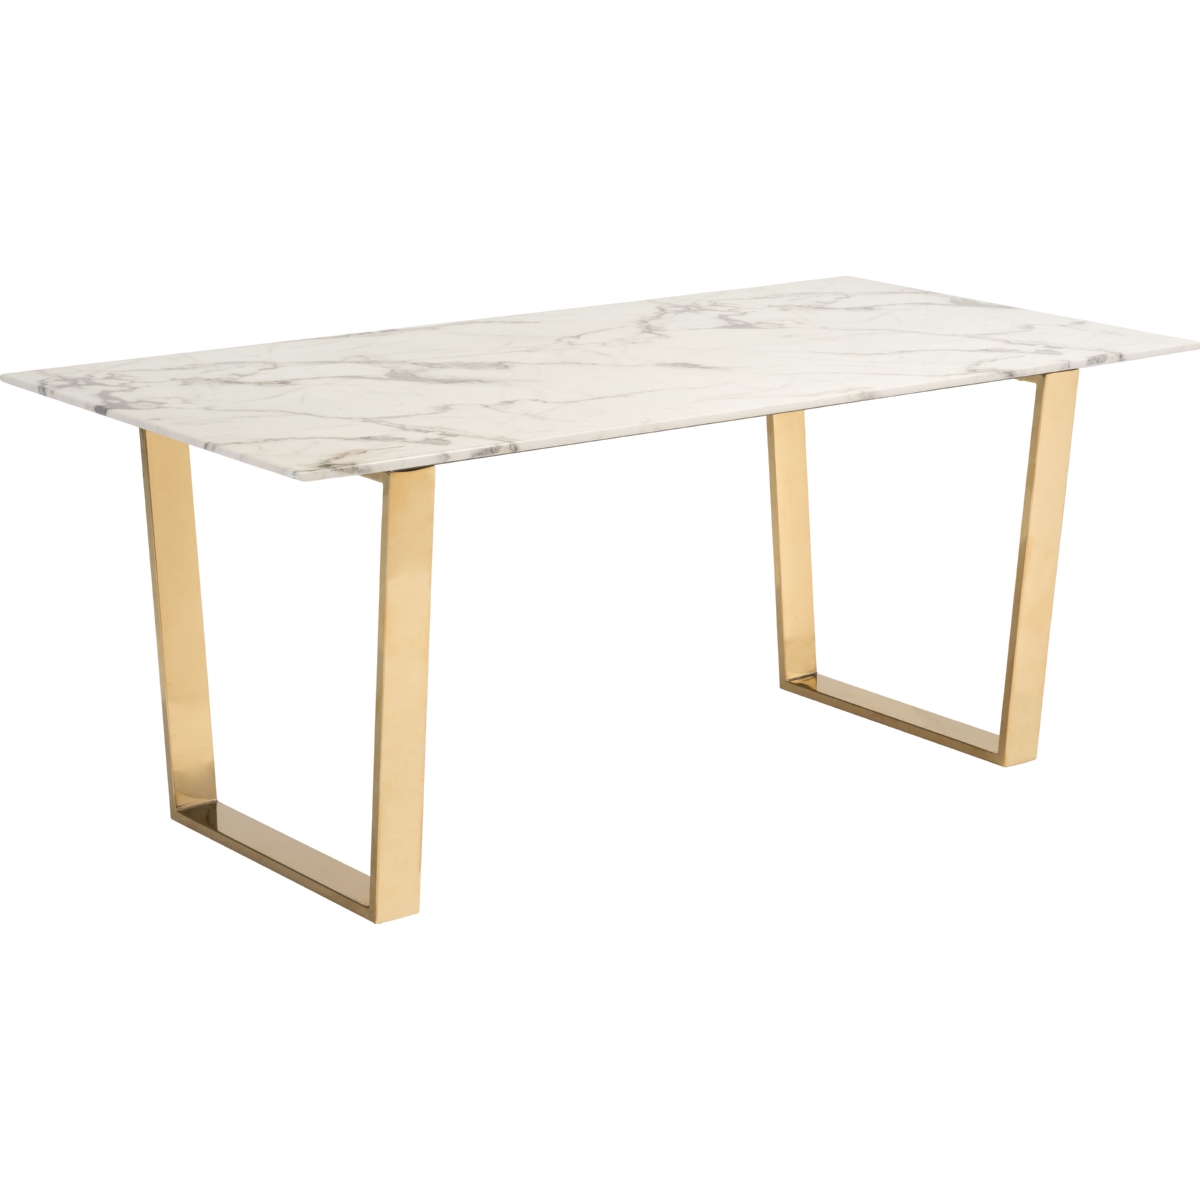 Обеденный стол Table белого цвета, артикул: IMR-810561